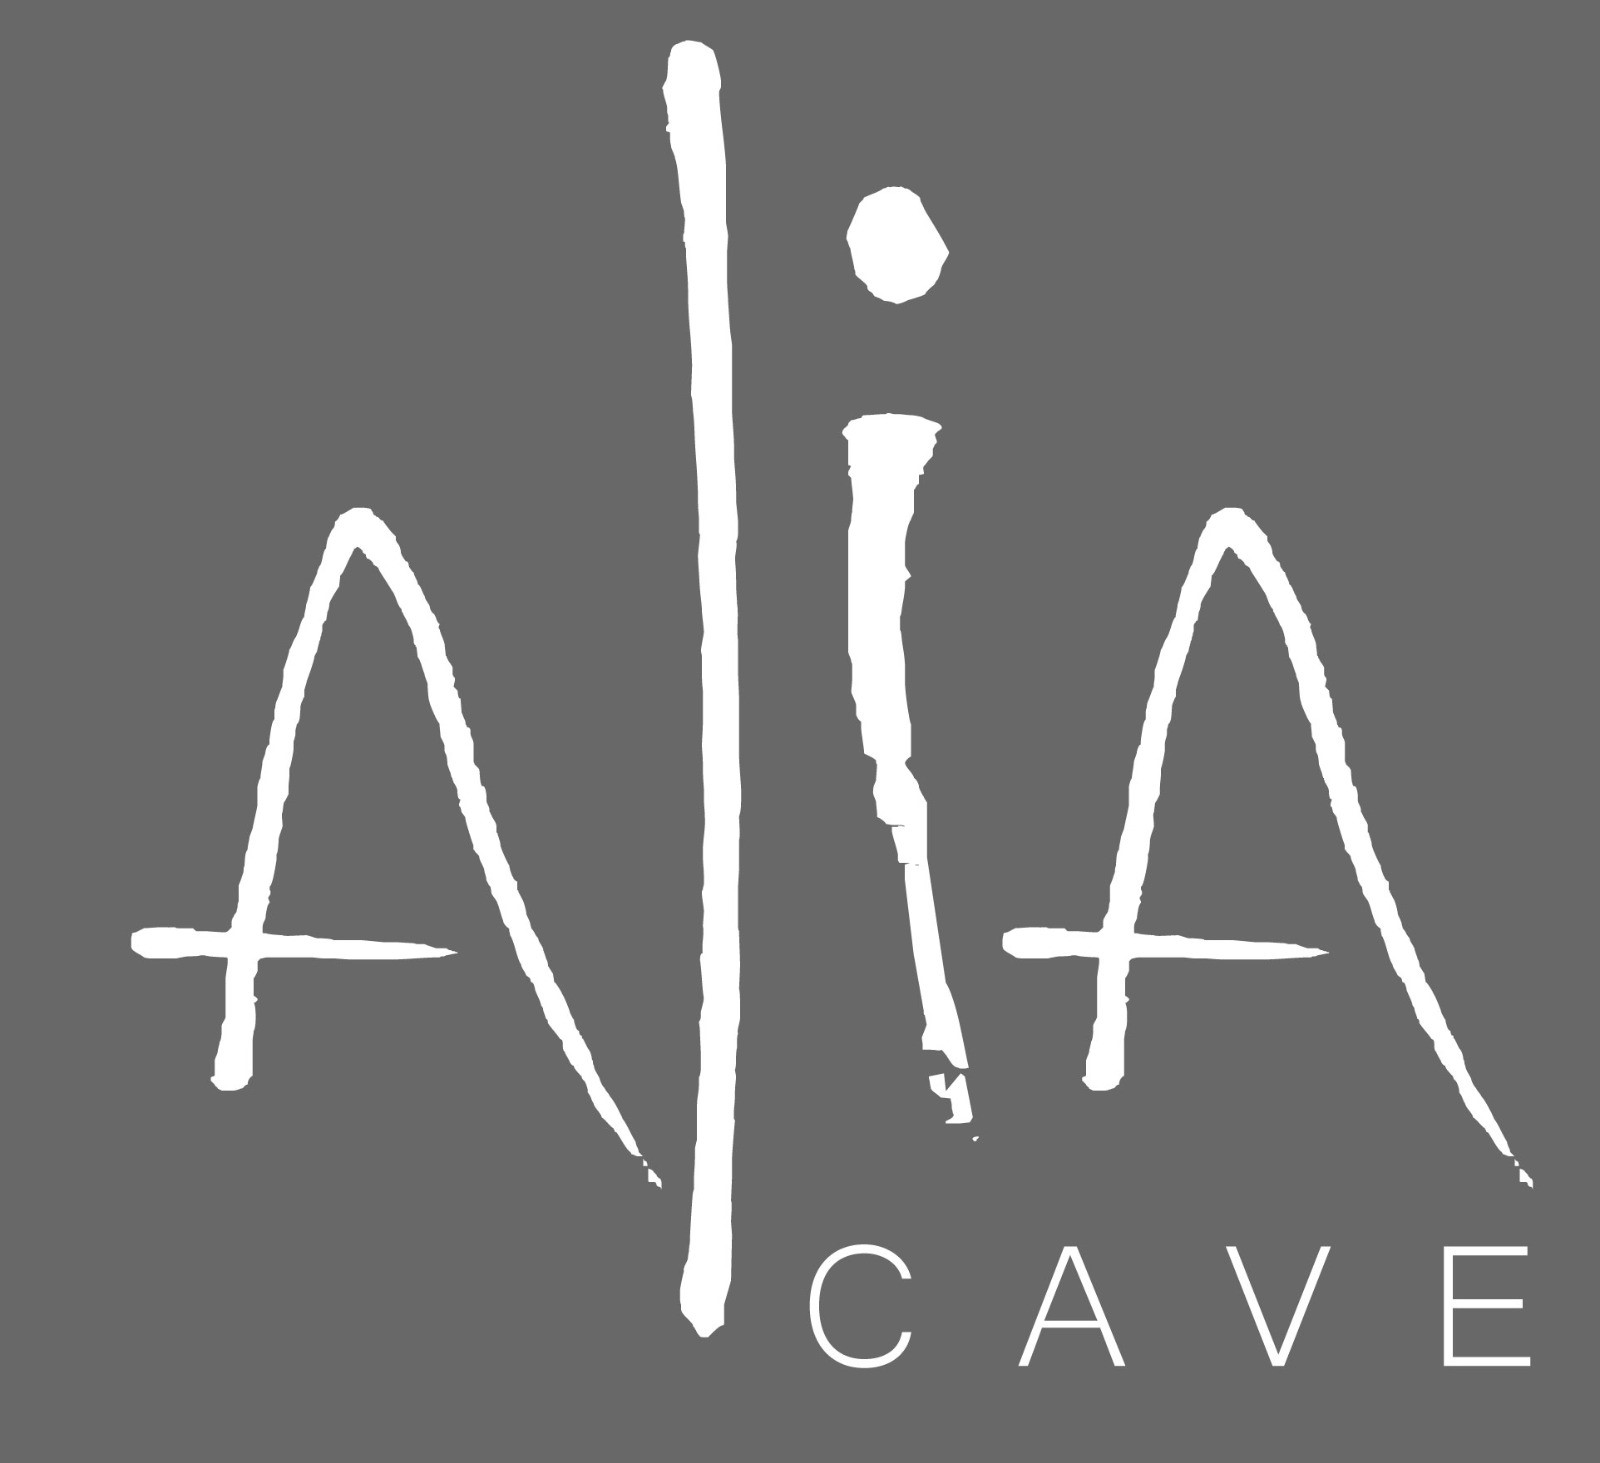 Alia Cave